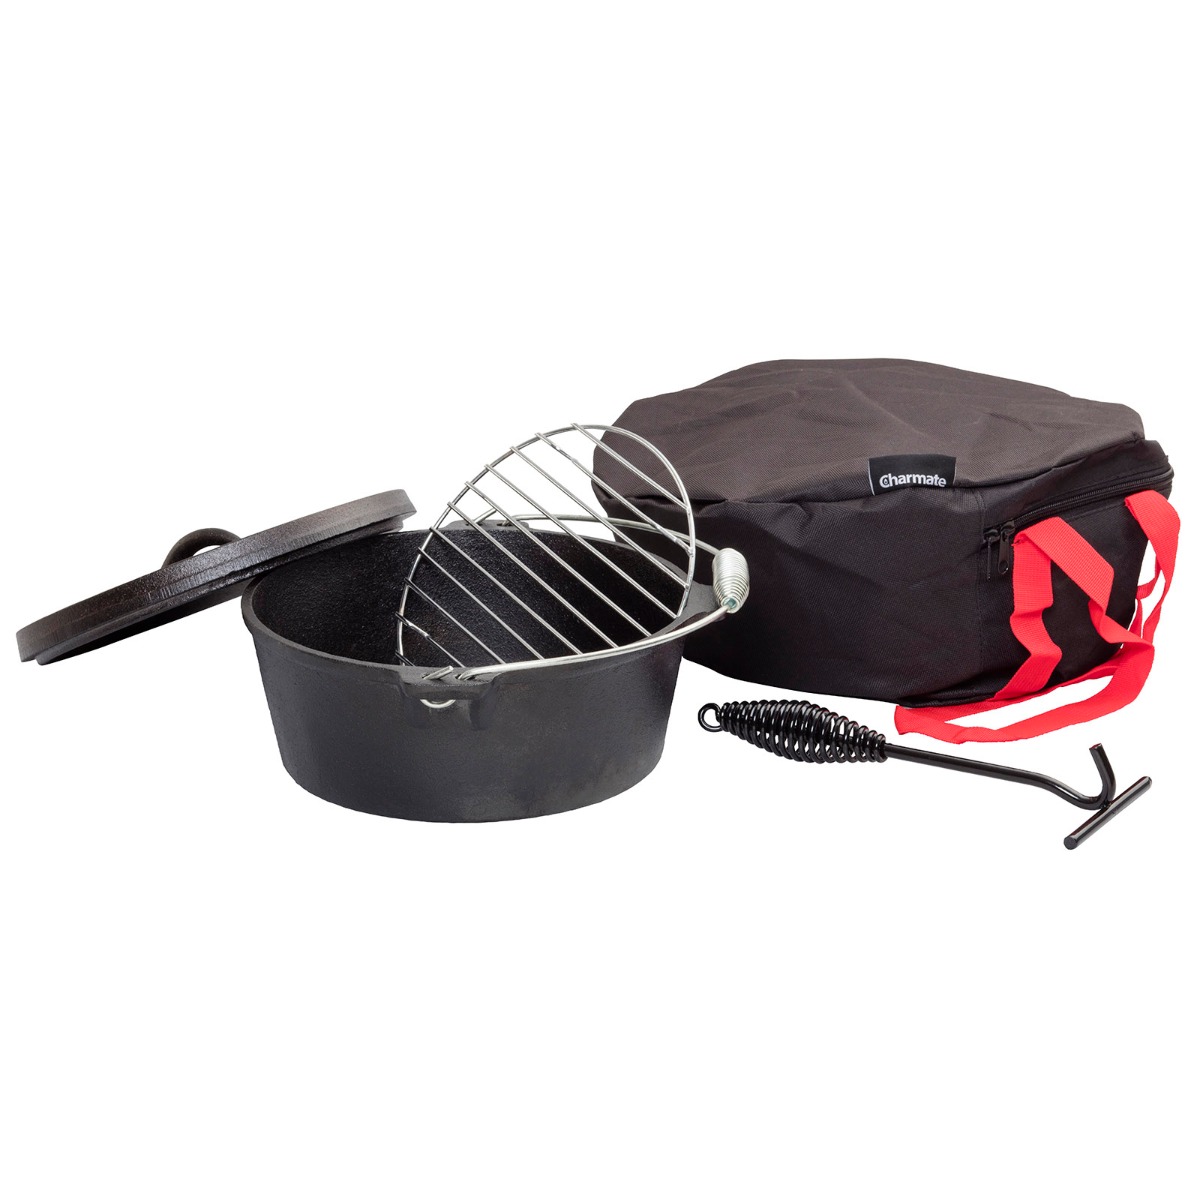 Camp Oven Kit 4.5 Qrt Camp Oven, Lid Lifter, Gloves, Trivet & Carry Bag